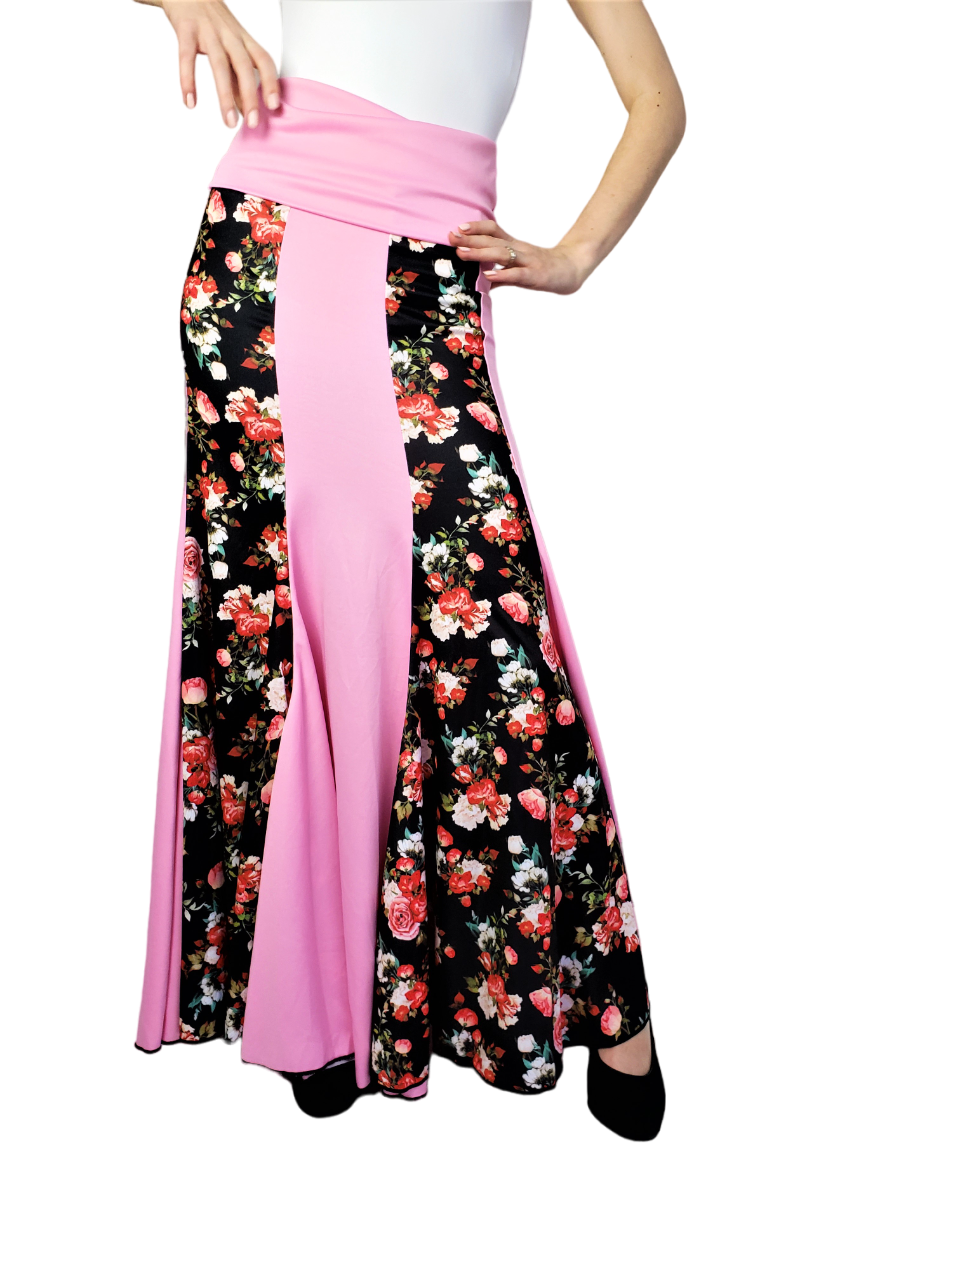 Happy Dance Flamenco Skirt- Rose/Pink Motif